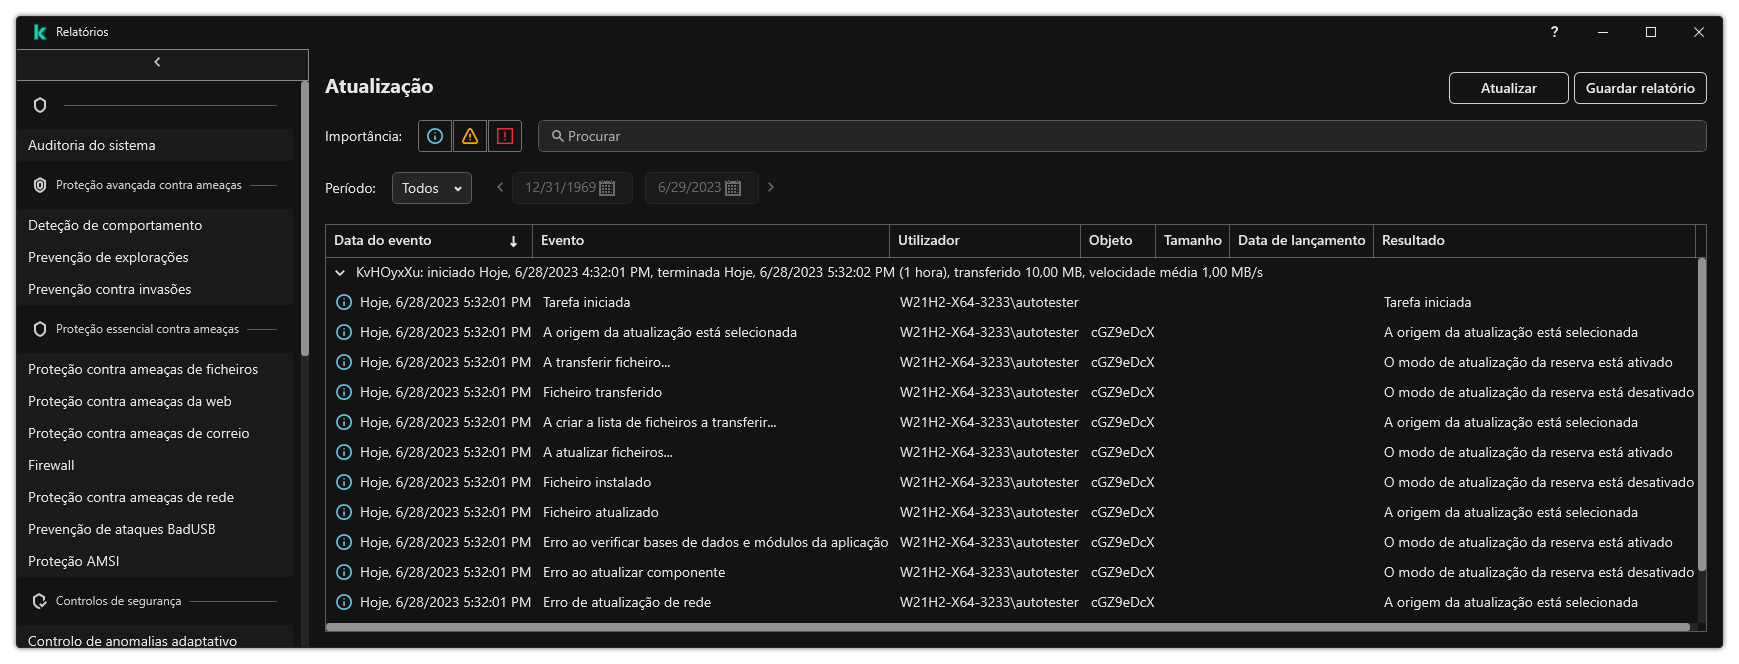 Uma janela com a lista de eventos no relatório. O utilizador pode filtrar/ordenar eventos e guardar relatórios num ficheiro.